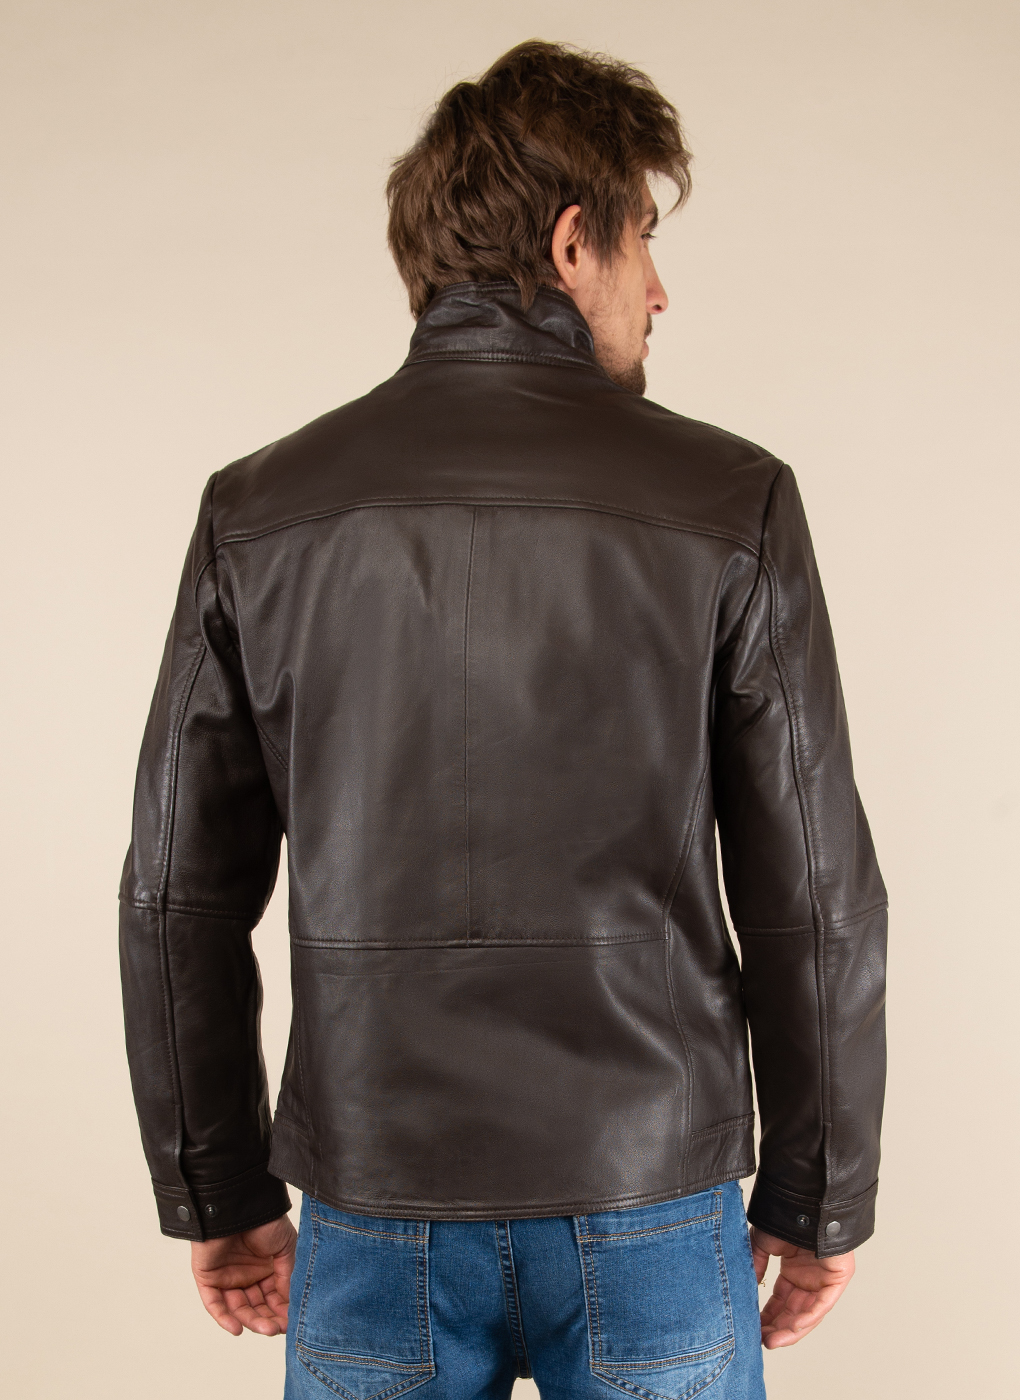 Кожаная куртка мужская Каляев 51795 коричневая 64 RU